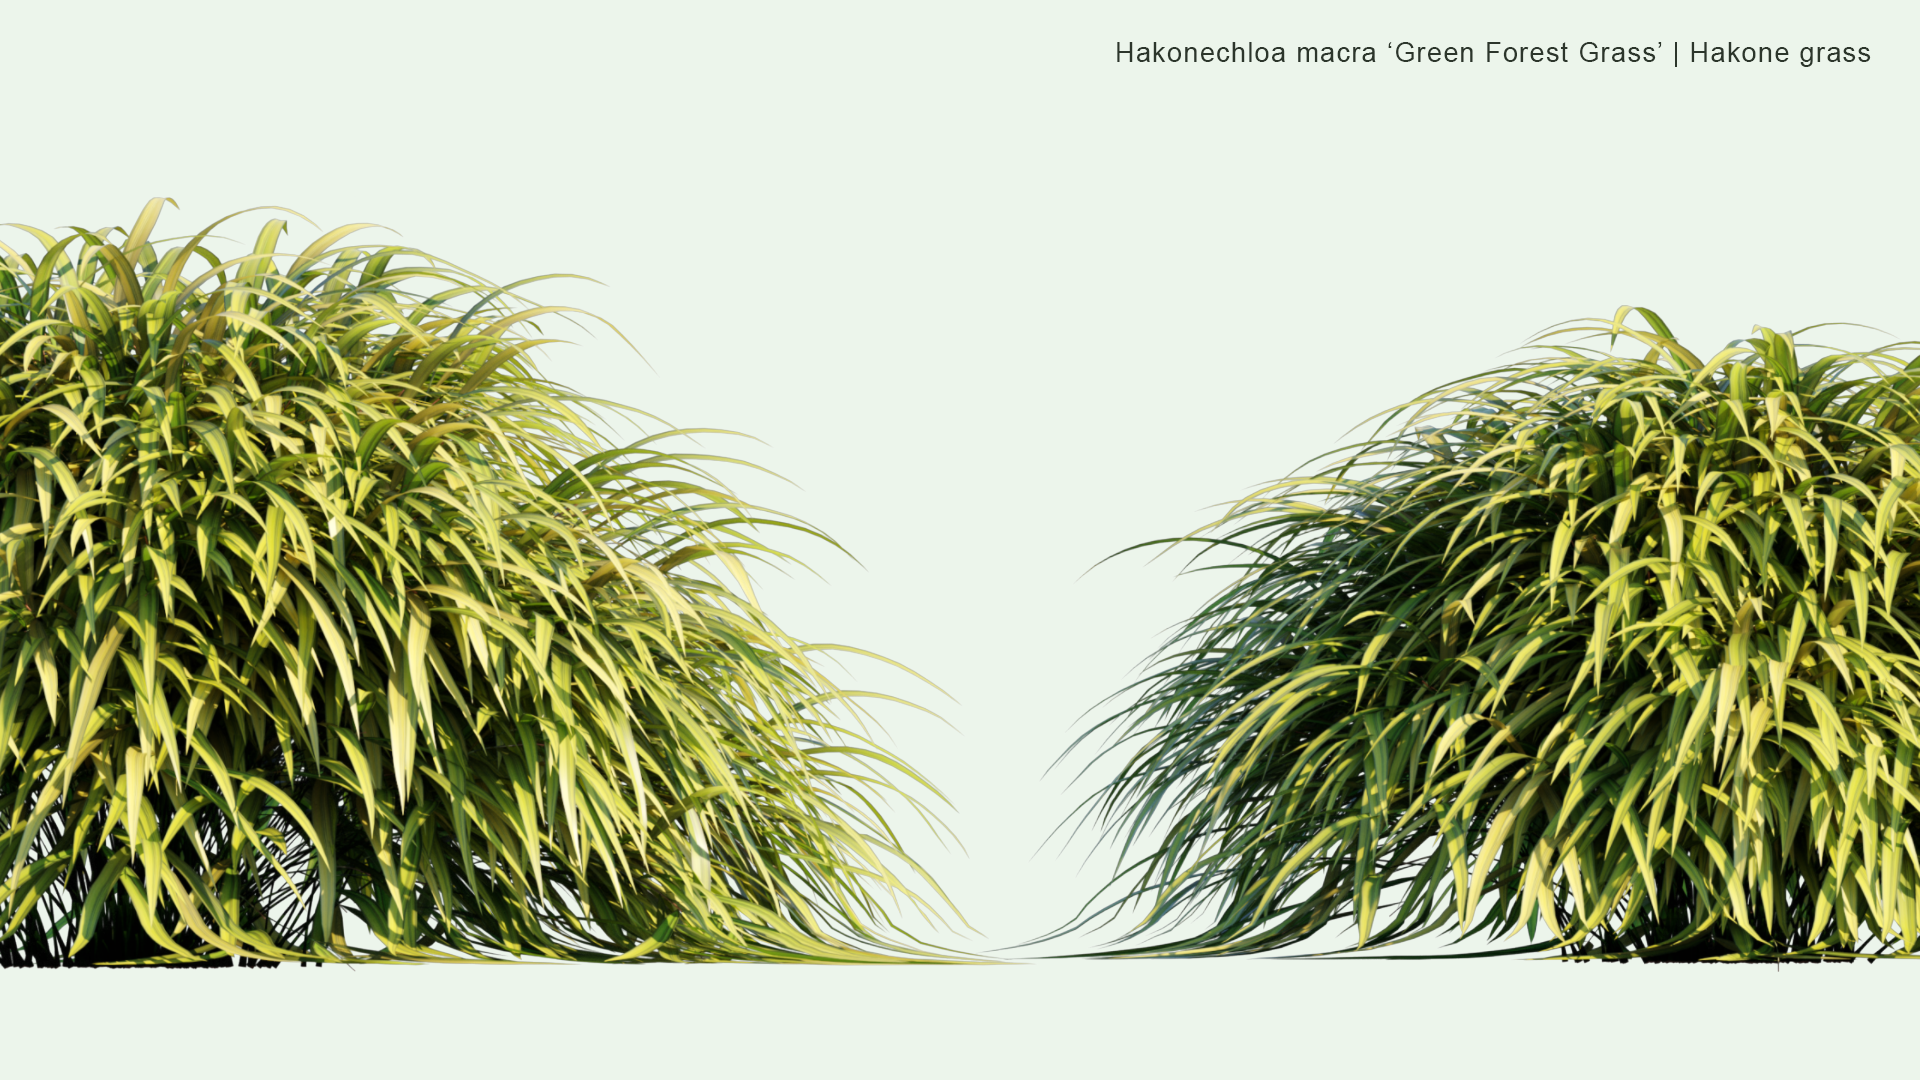 2D Hakonechloa Macra ‘ Green Forest Grass’ - Hakone Grass